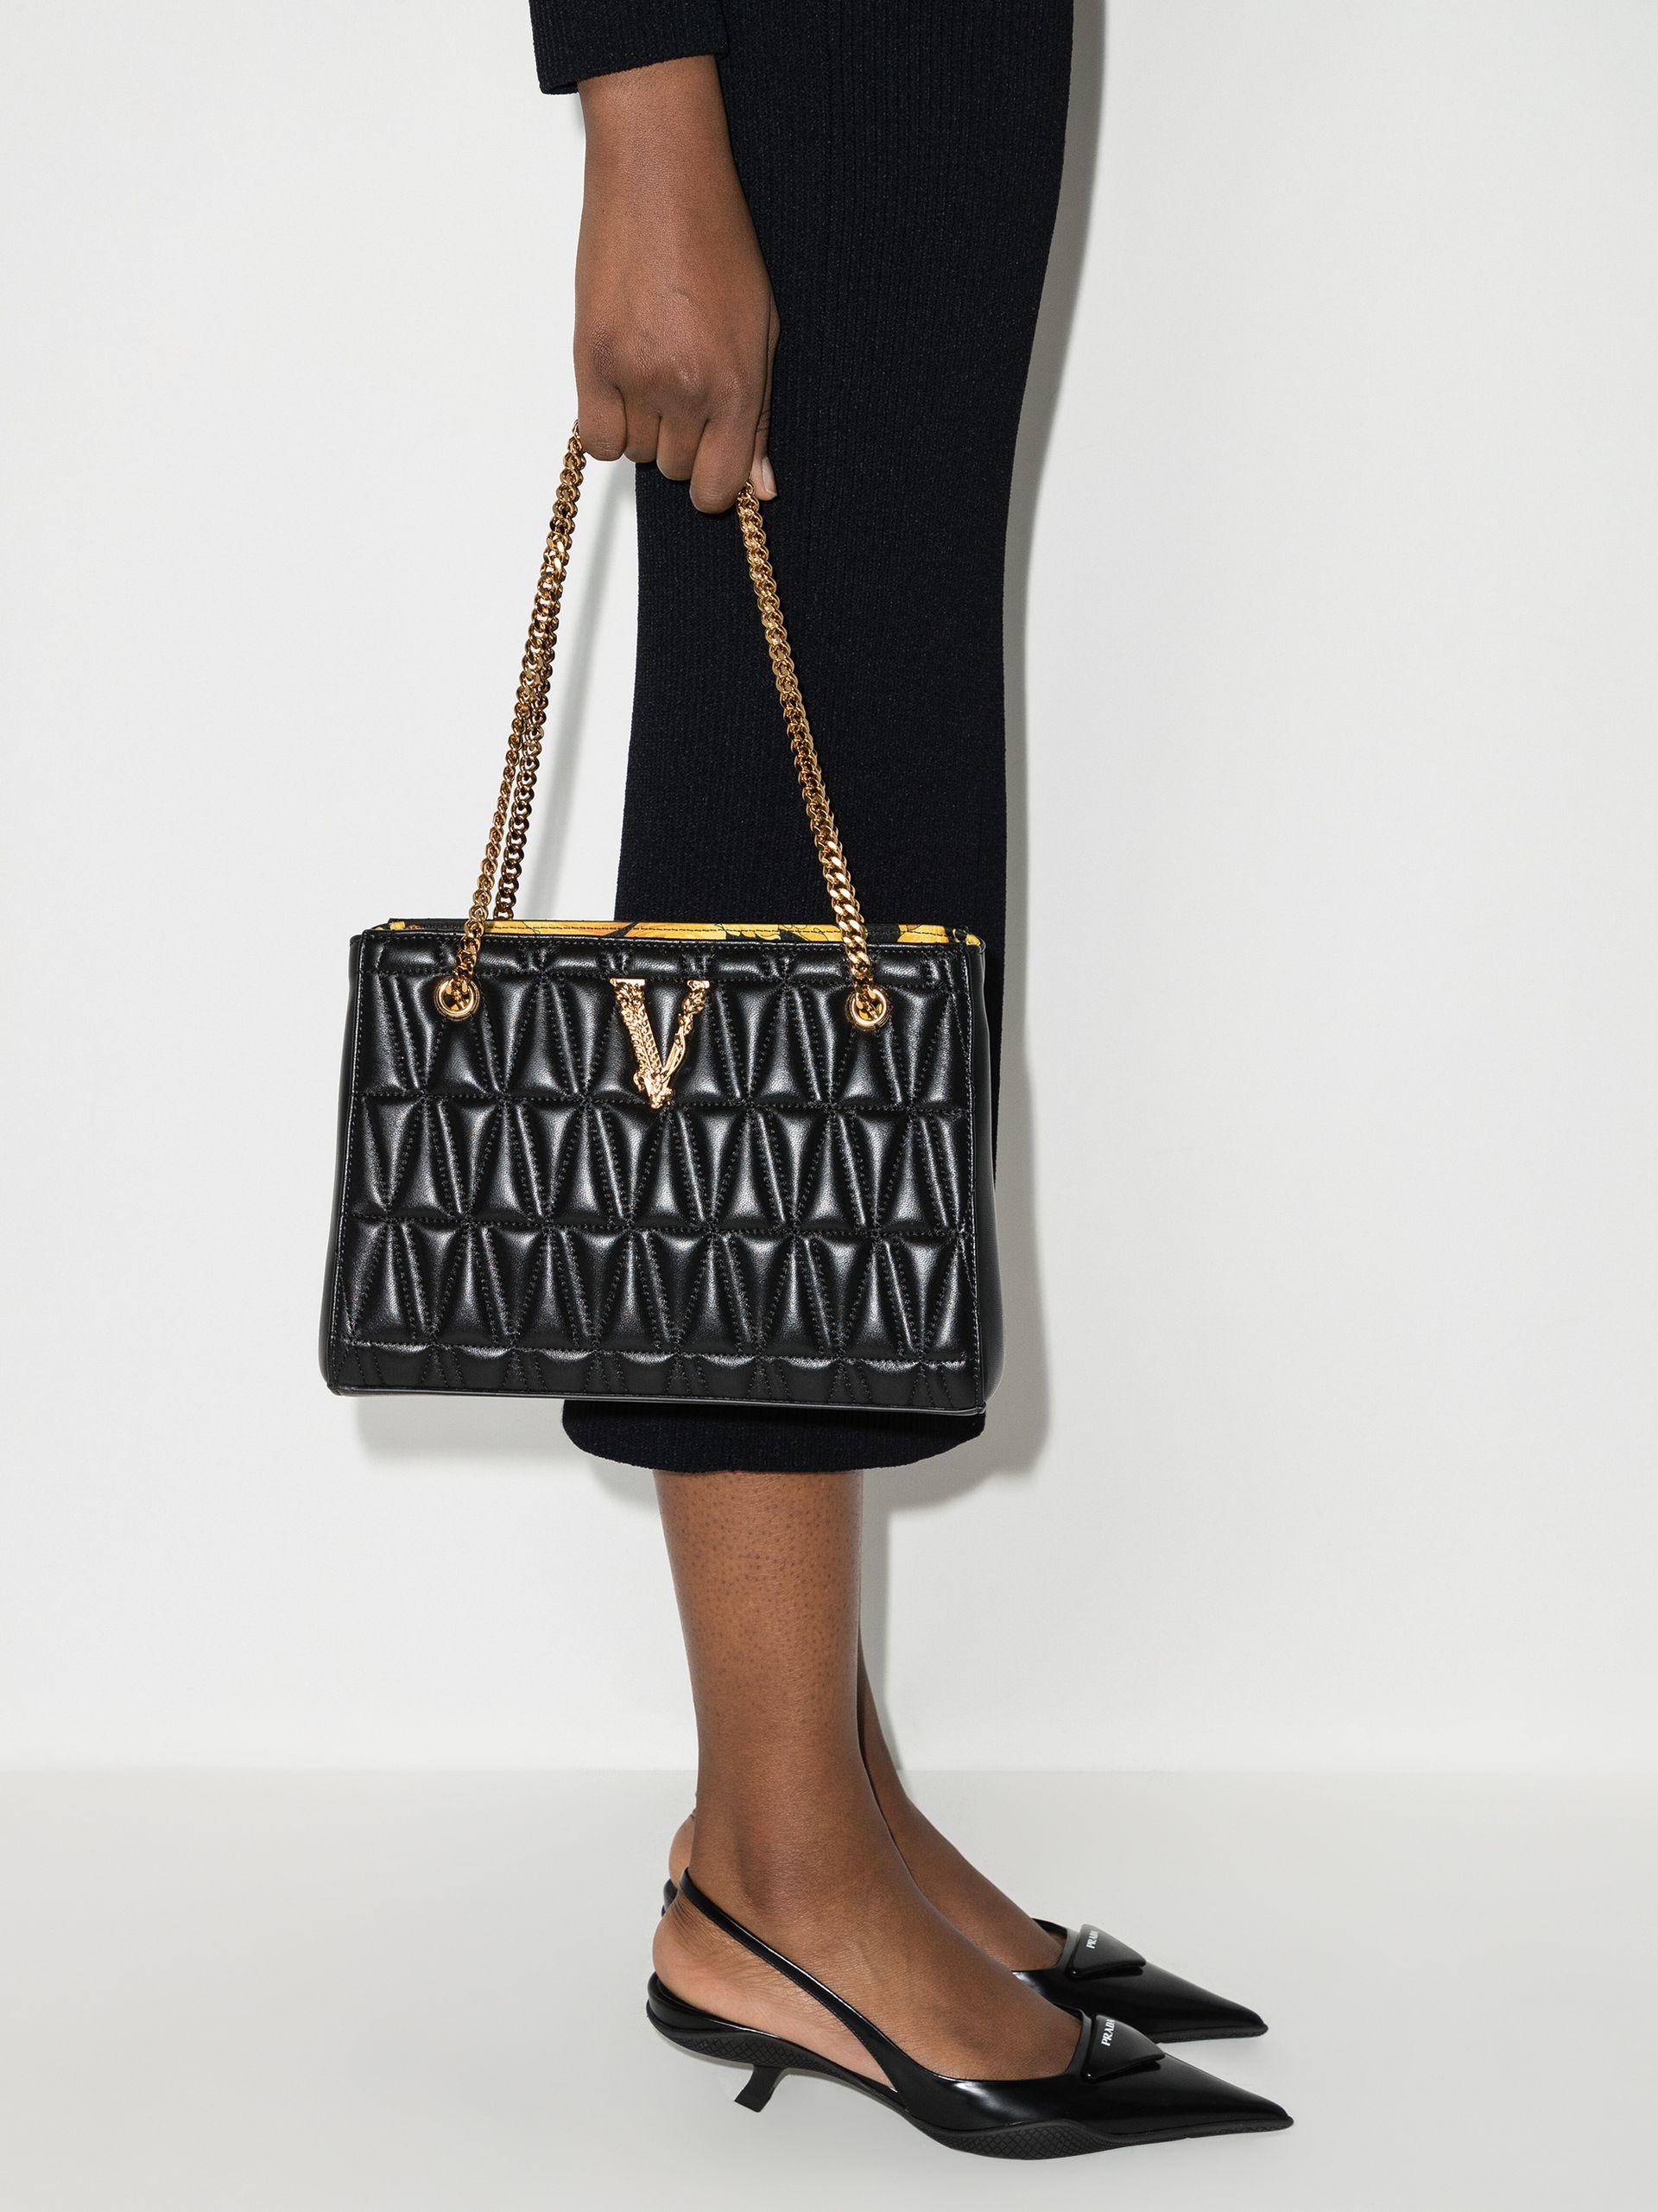 Versace, Bags, Versace Virtus Mini Bag